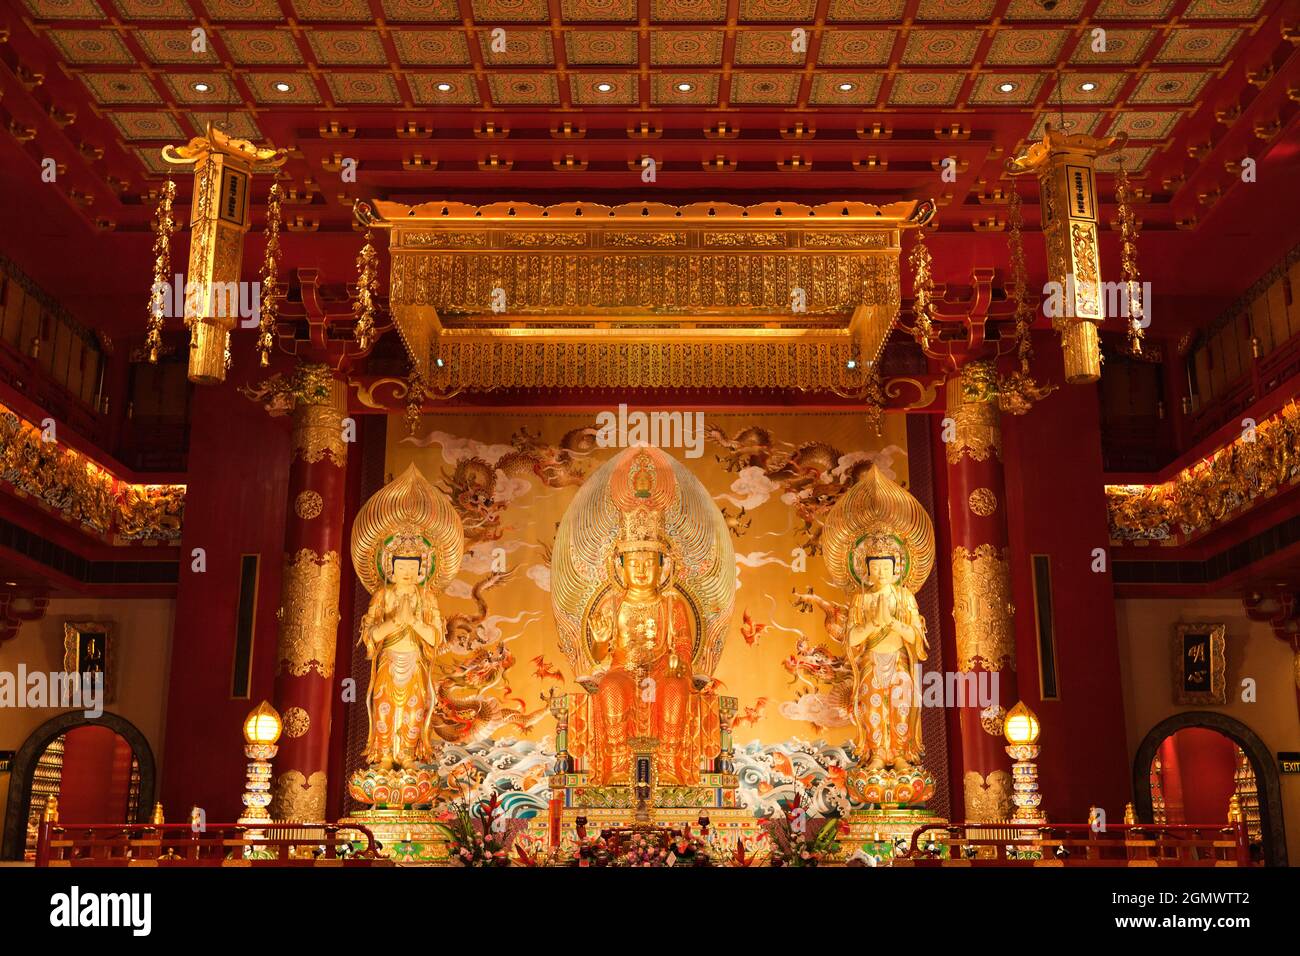 Questo tempio buddista cinese in stile Tang a Chinatown di Singapore prende il suo nome da ciò che i buddisti considerano la reliquia del Sacro dente Buddha che ospita Foto Stock